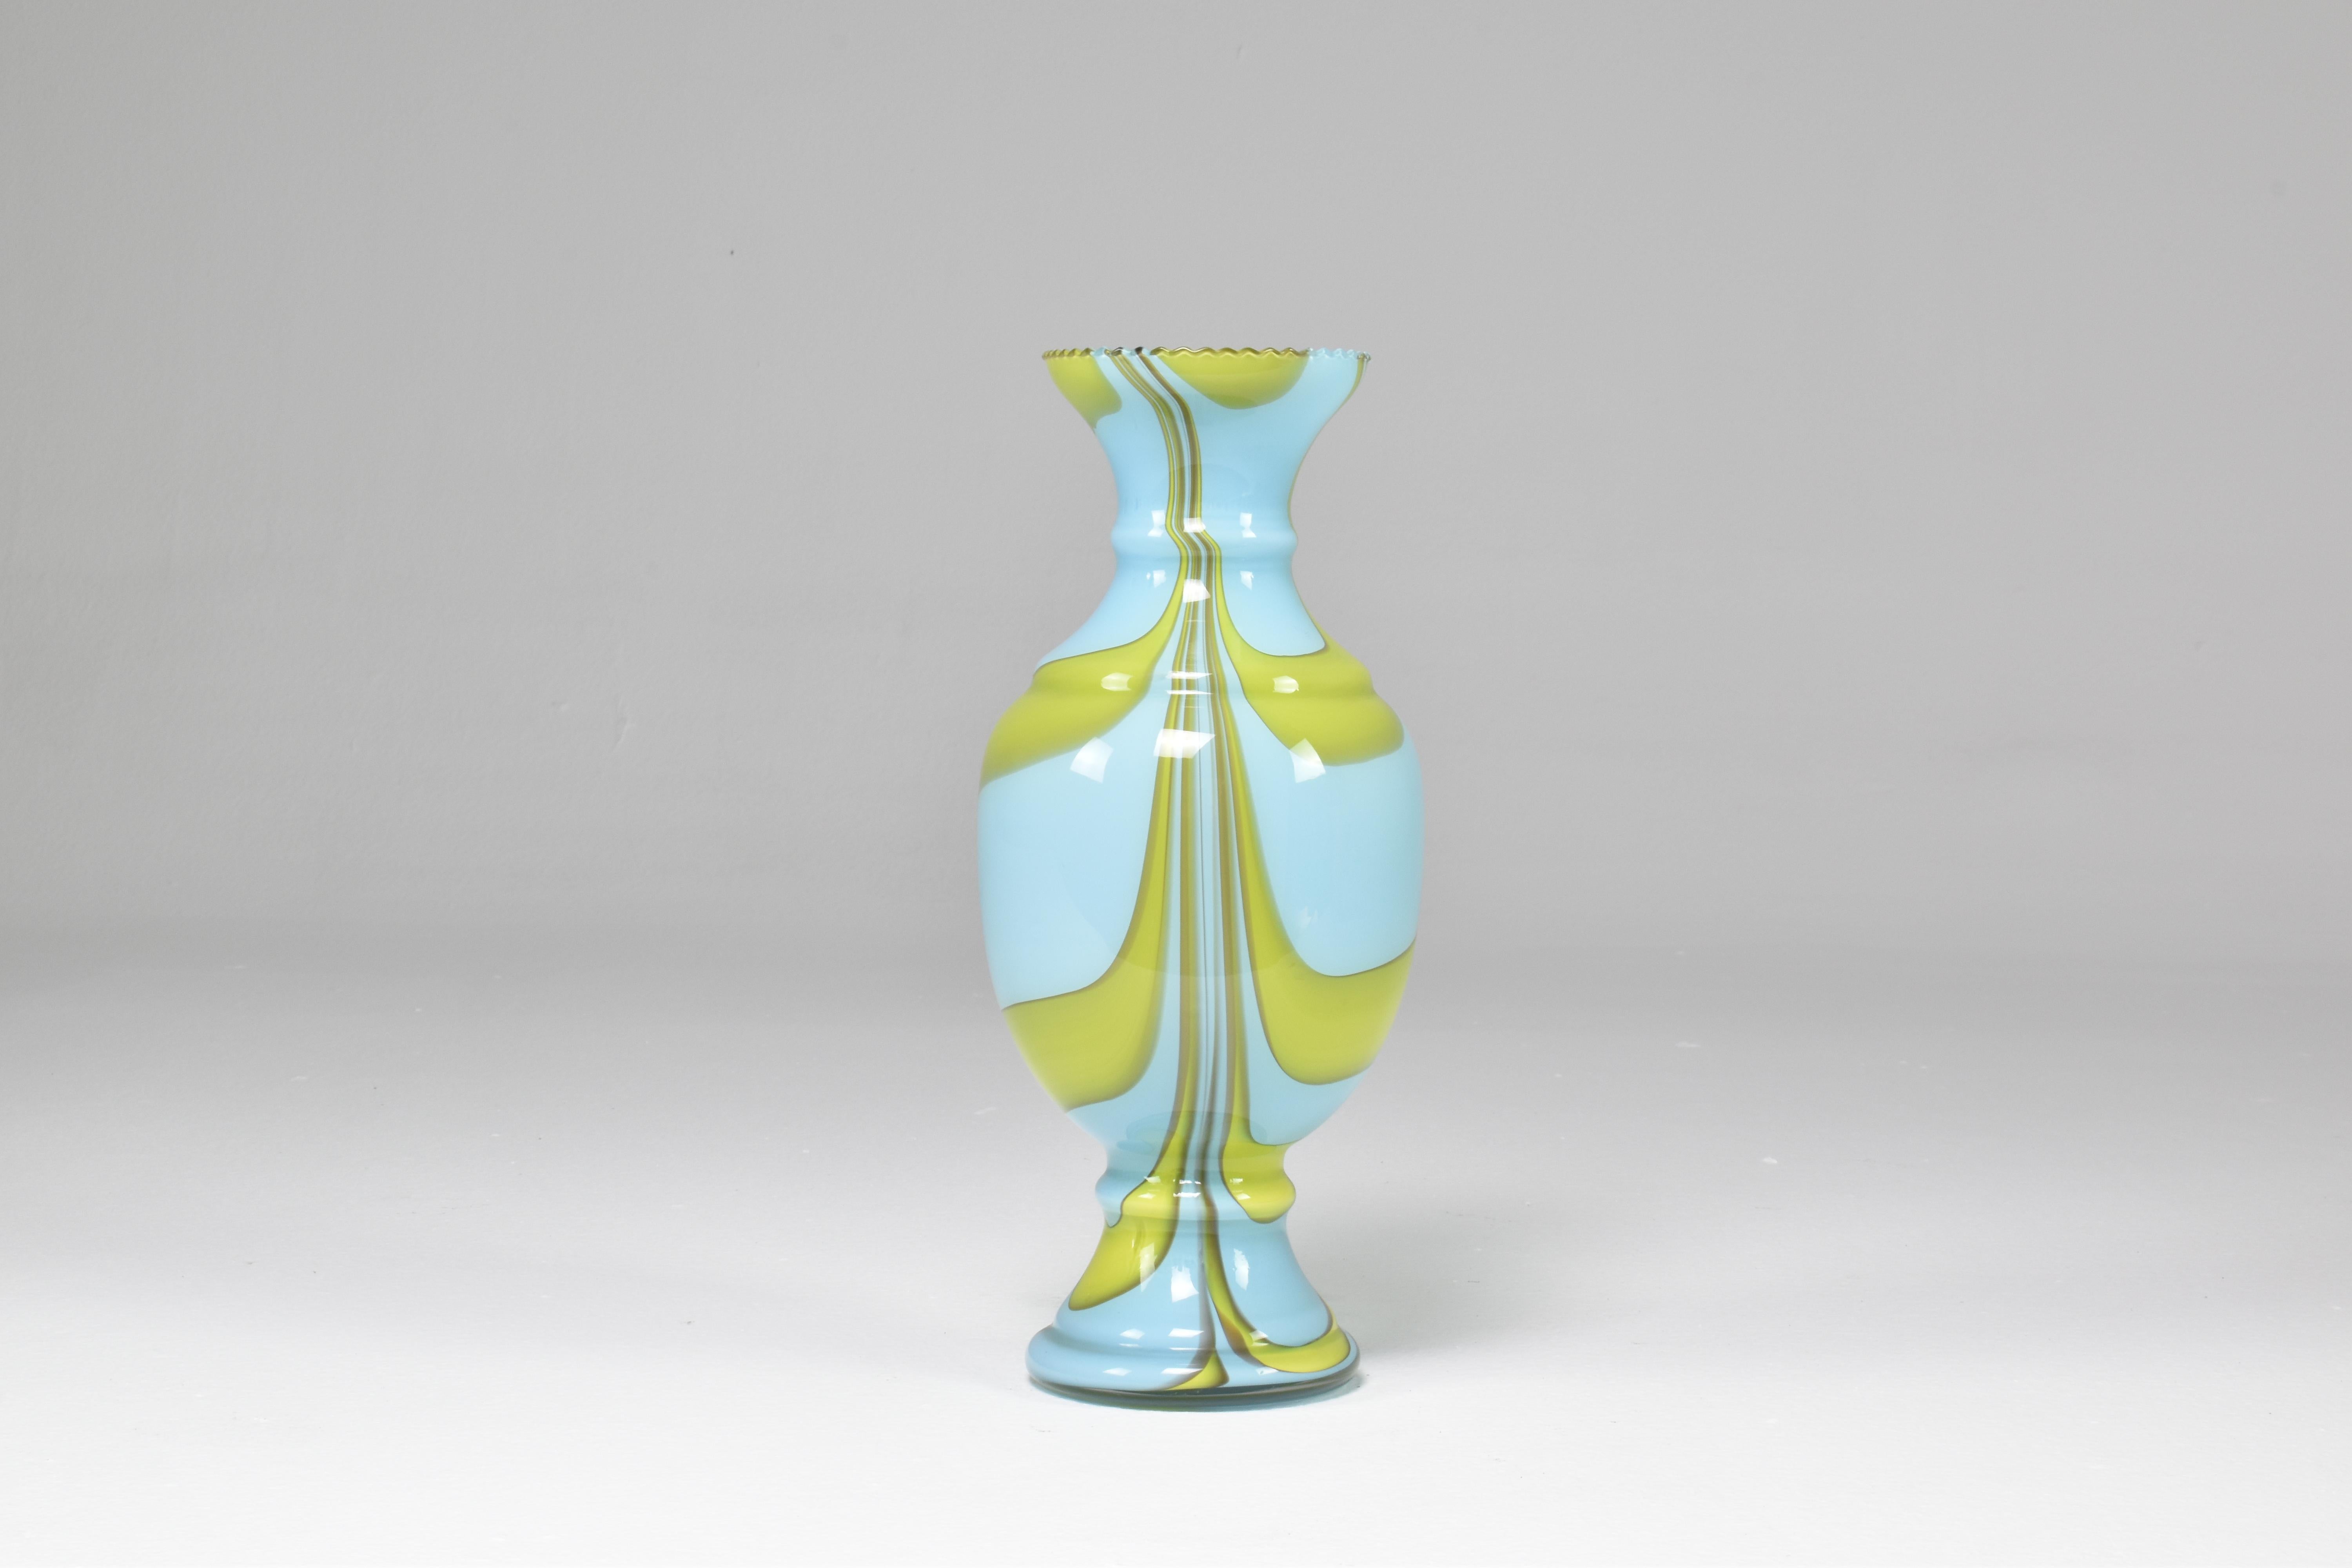 Elegant vase italien en verre soufflé à la bouche des années 1960, fabriqué avec l'art du verre tourbillonnant de style Murano. 
Il présente des teintes douces de bleu clair et de vert tendre, savamment mélangées. Cette pièce est conçue sous la